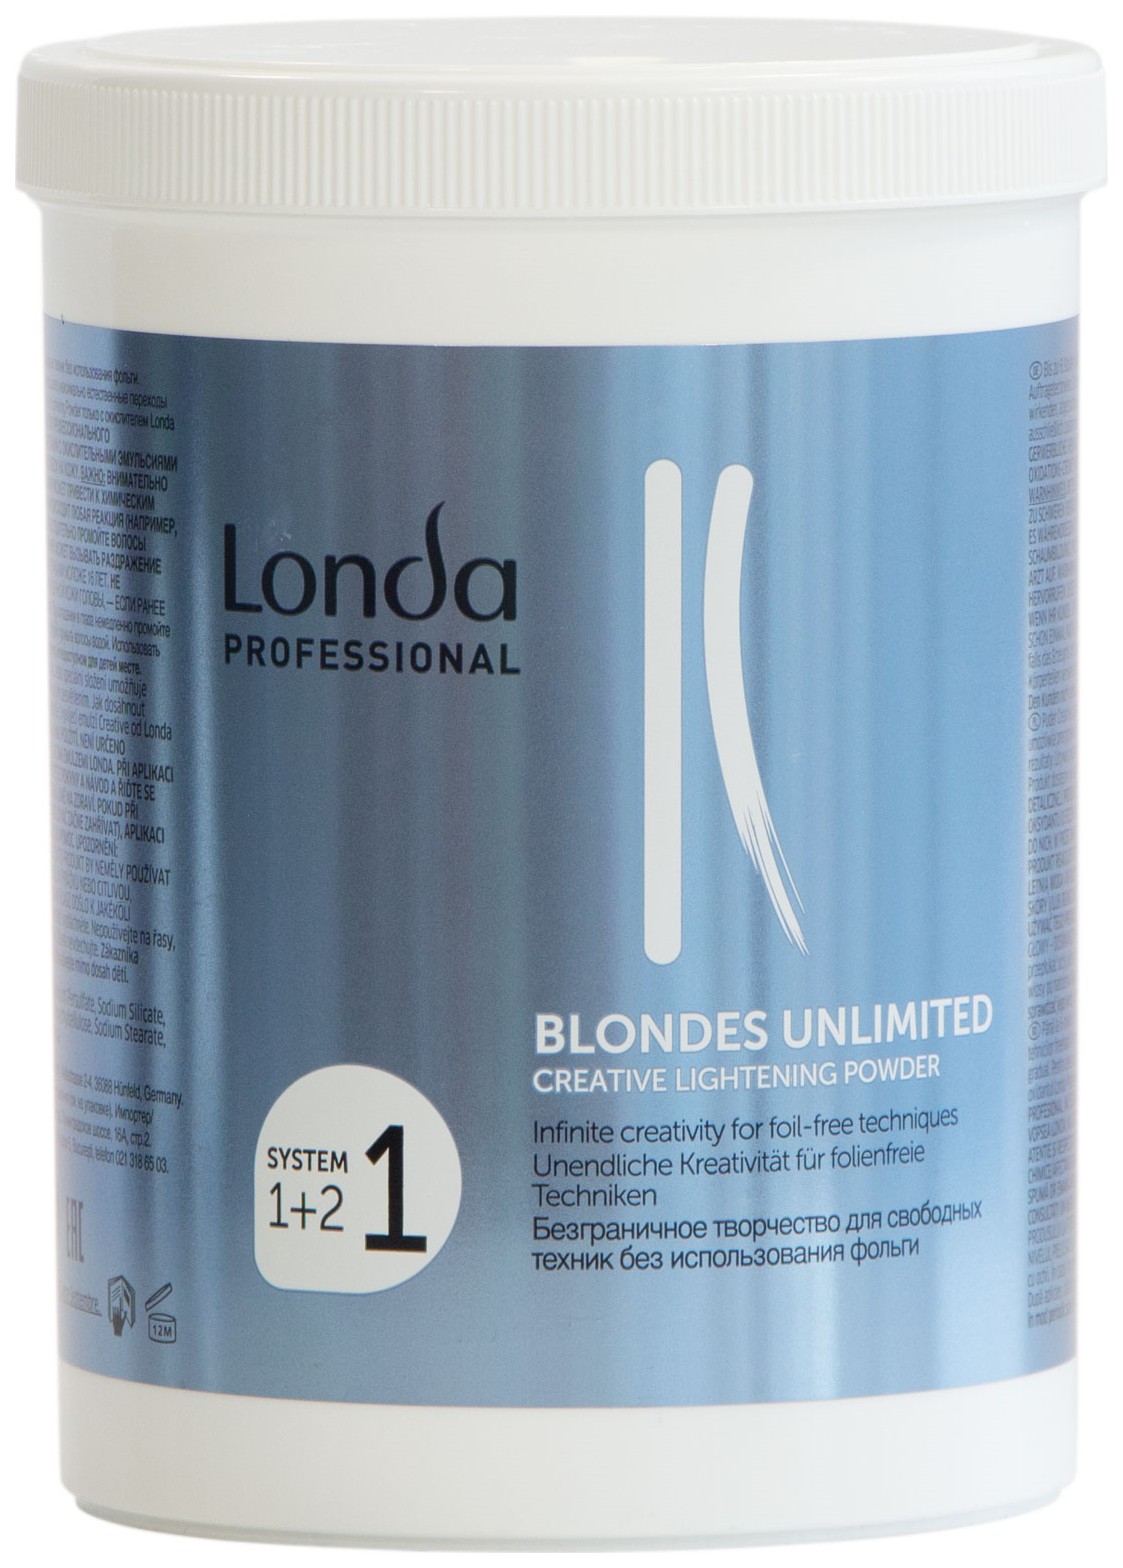 Осветлитель Londa Professional Blondes Unlimited Creative Lightening Powder 400 г окислитель 6% blondes unlimited